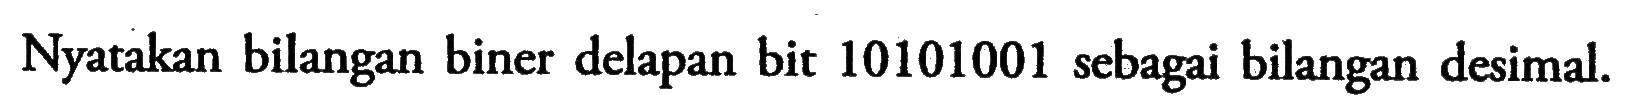 Nyatakan bilangan biner delapan bit 10101001 sebagai bilangan desimal.